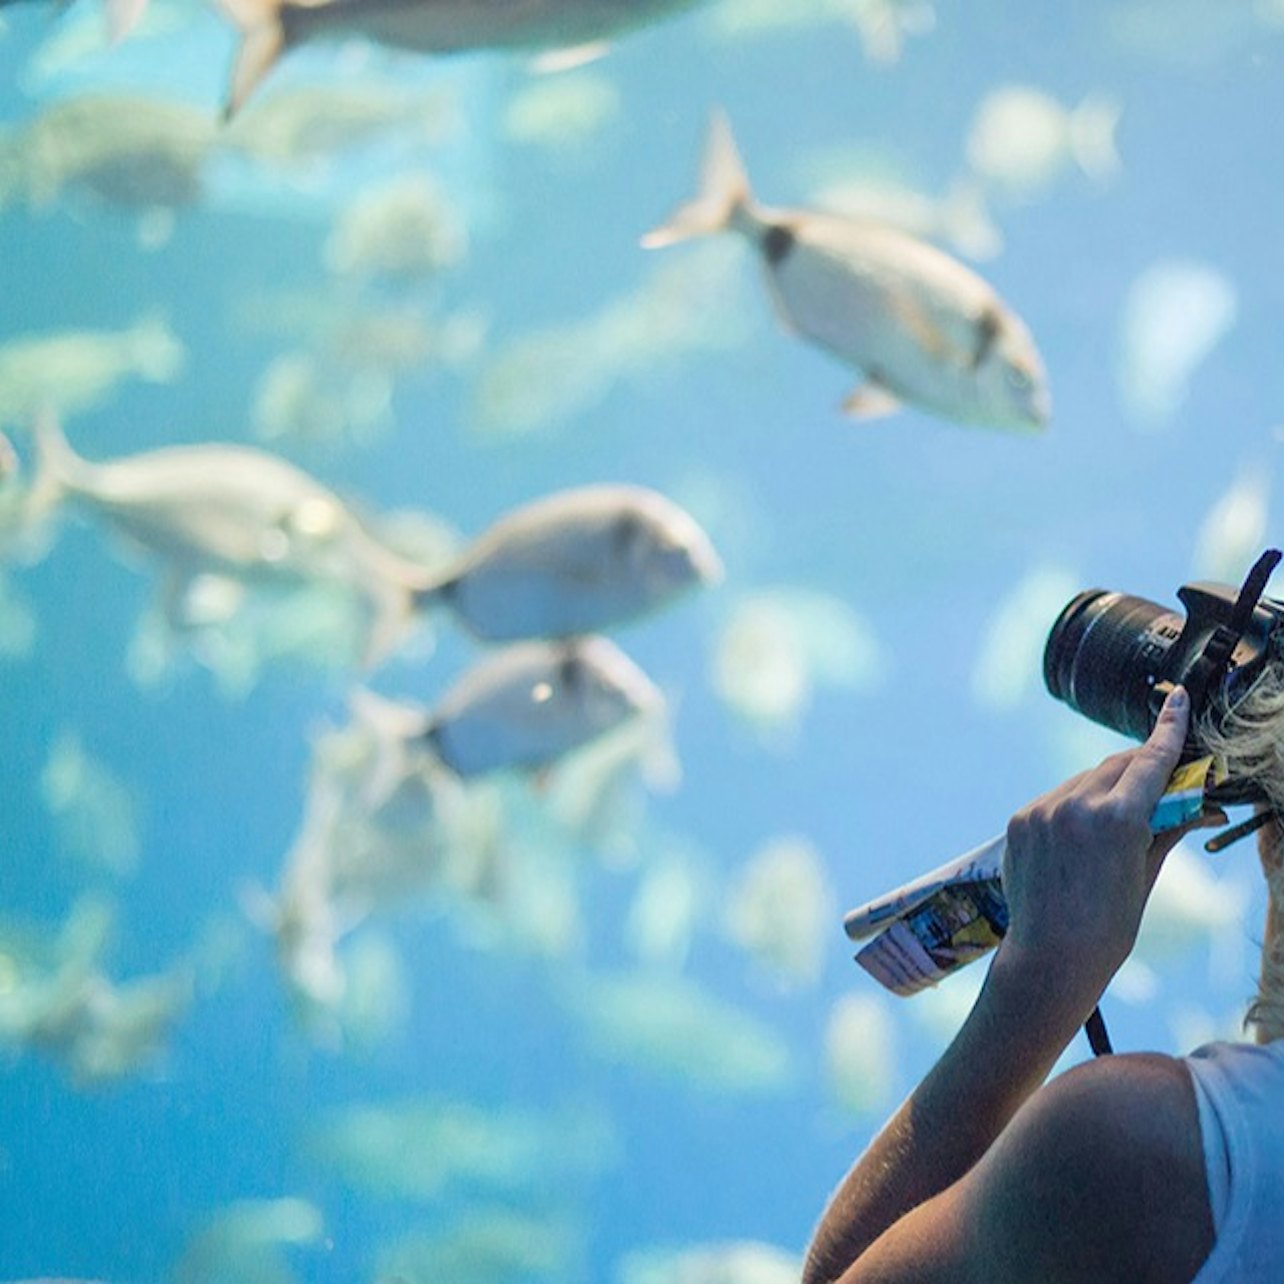 Palma Aquarium + Cinema 3D Aquadome Pular a Linha - Acomodações em Palma de Mallorca